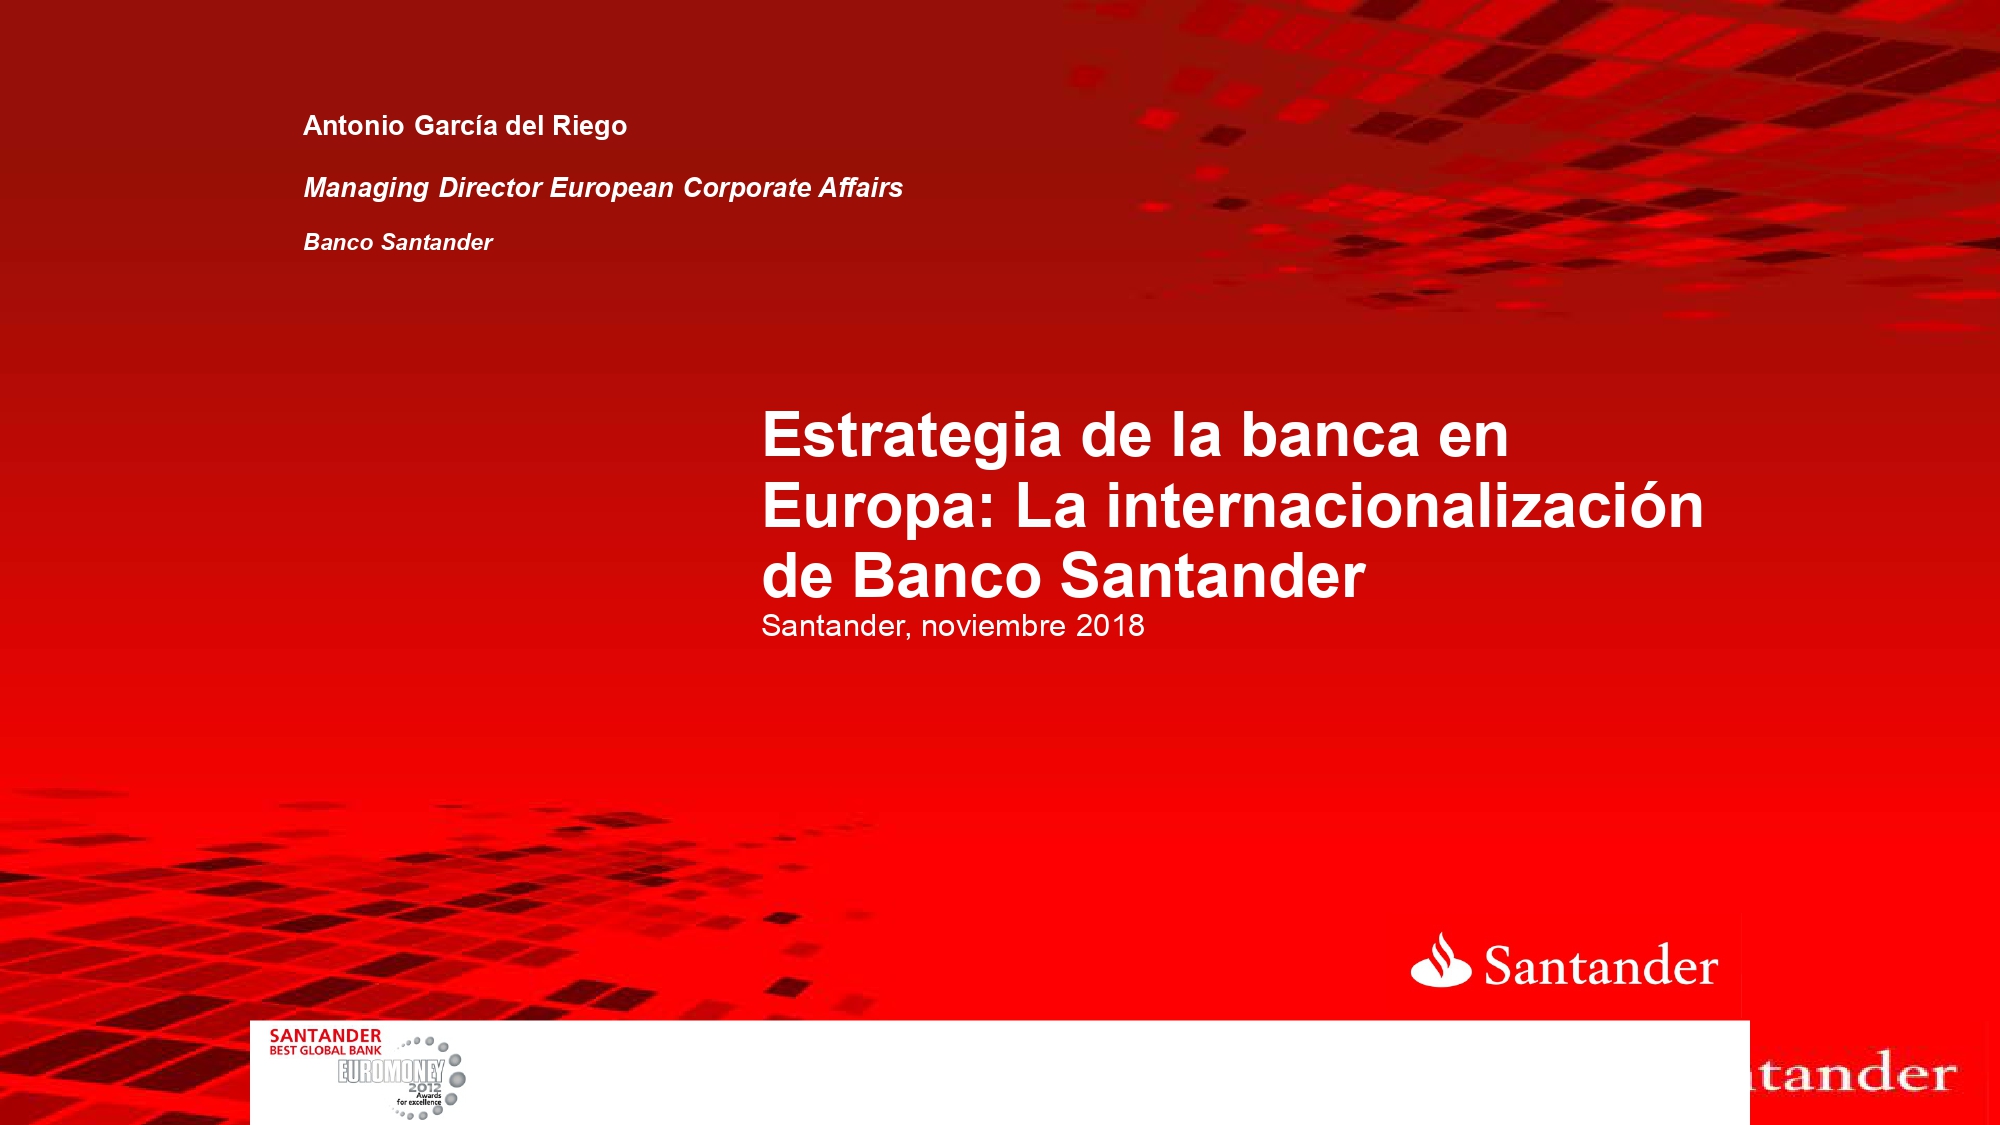 Estrategia de la banca española en Europa – Antonio García del Riego